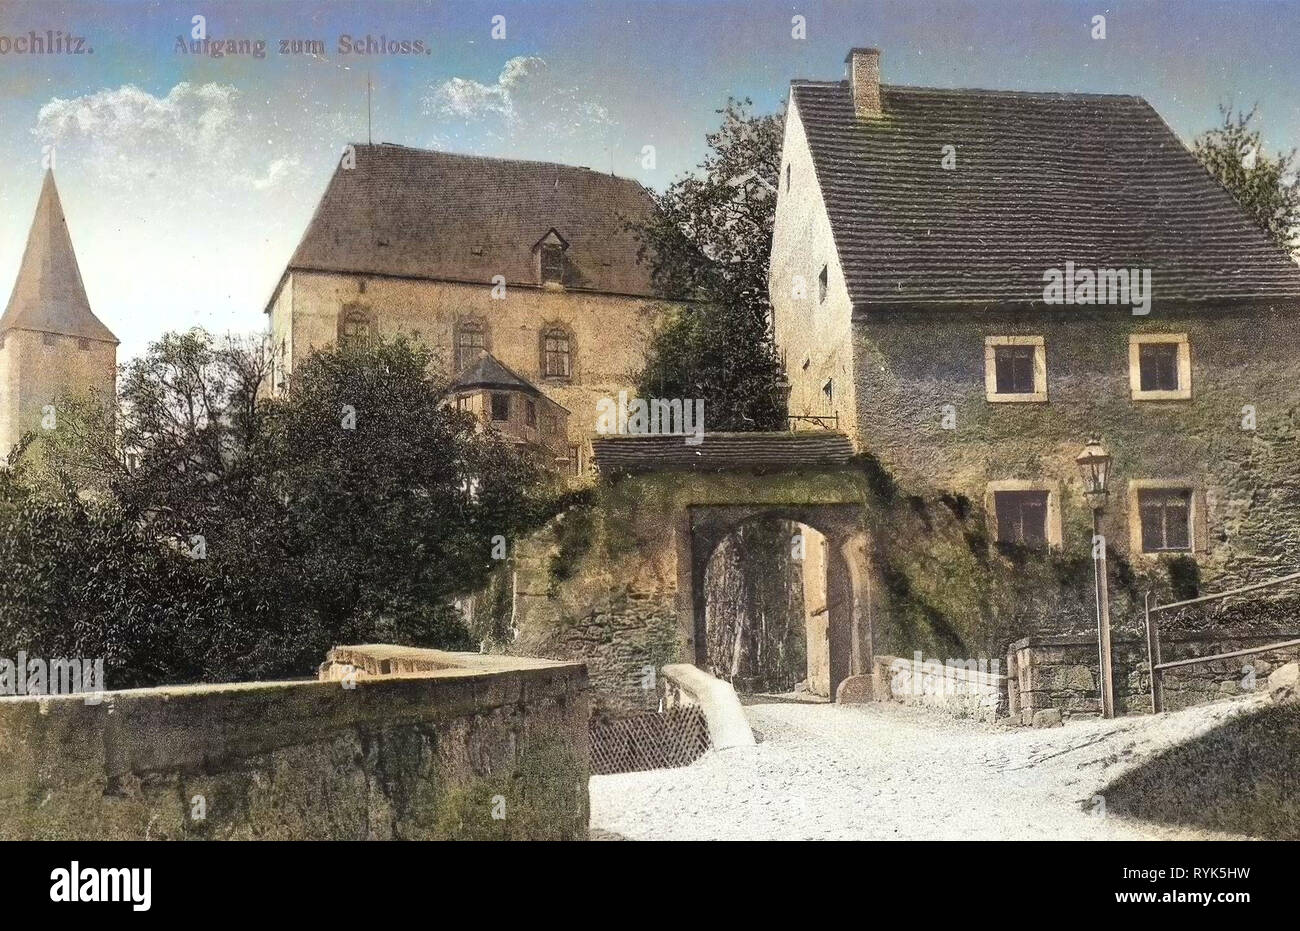 Schloss Rochlitz, portes du château en Saxe, 1916, Landkreis Mittelsachsen, Rochlitz, Aufgang zum Schloß, Allemagne Banque D'Images